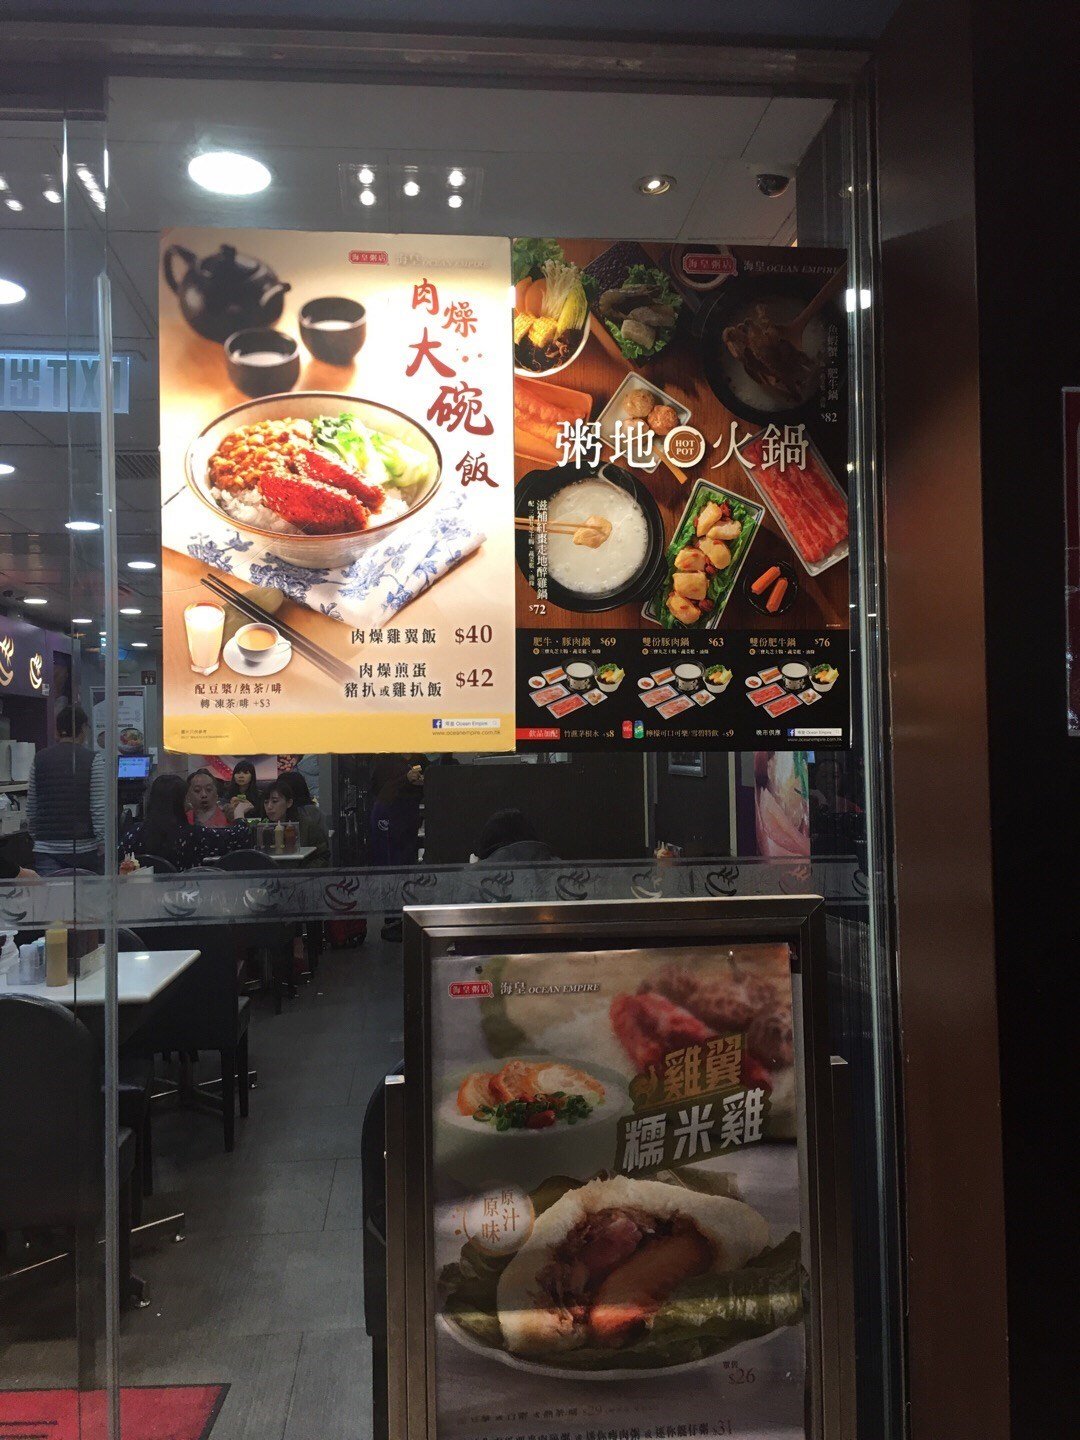 海皇粥店的食评 – 香港美孚的港式粥品 